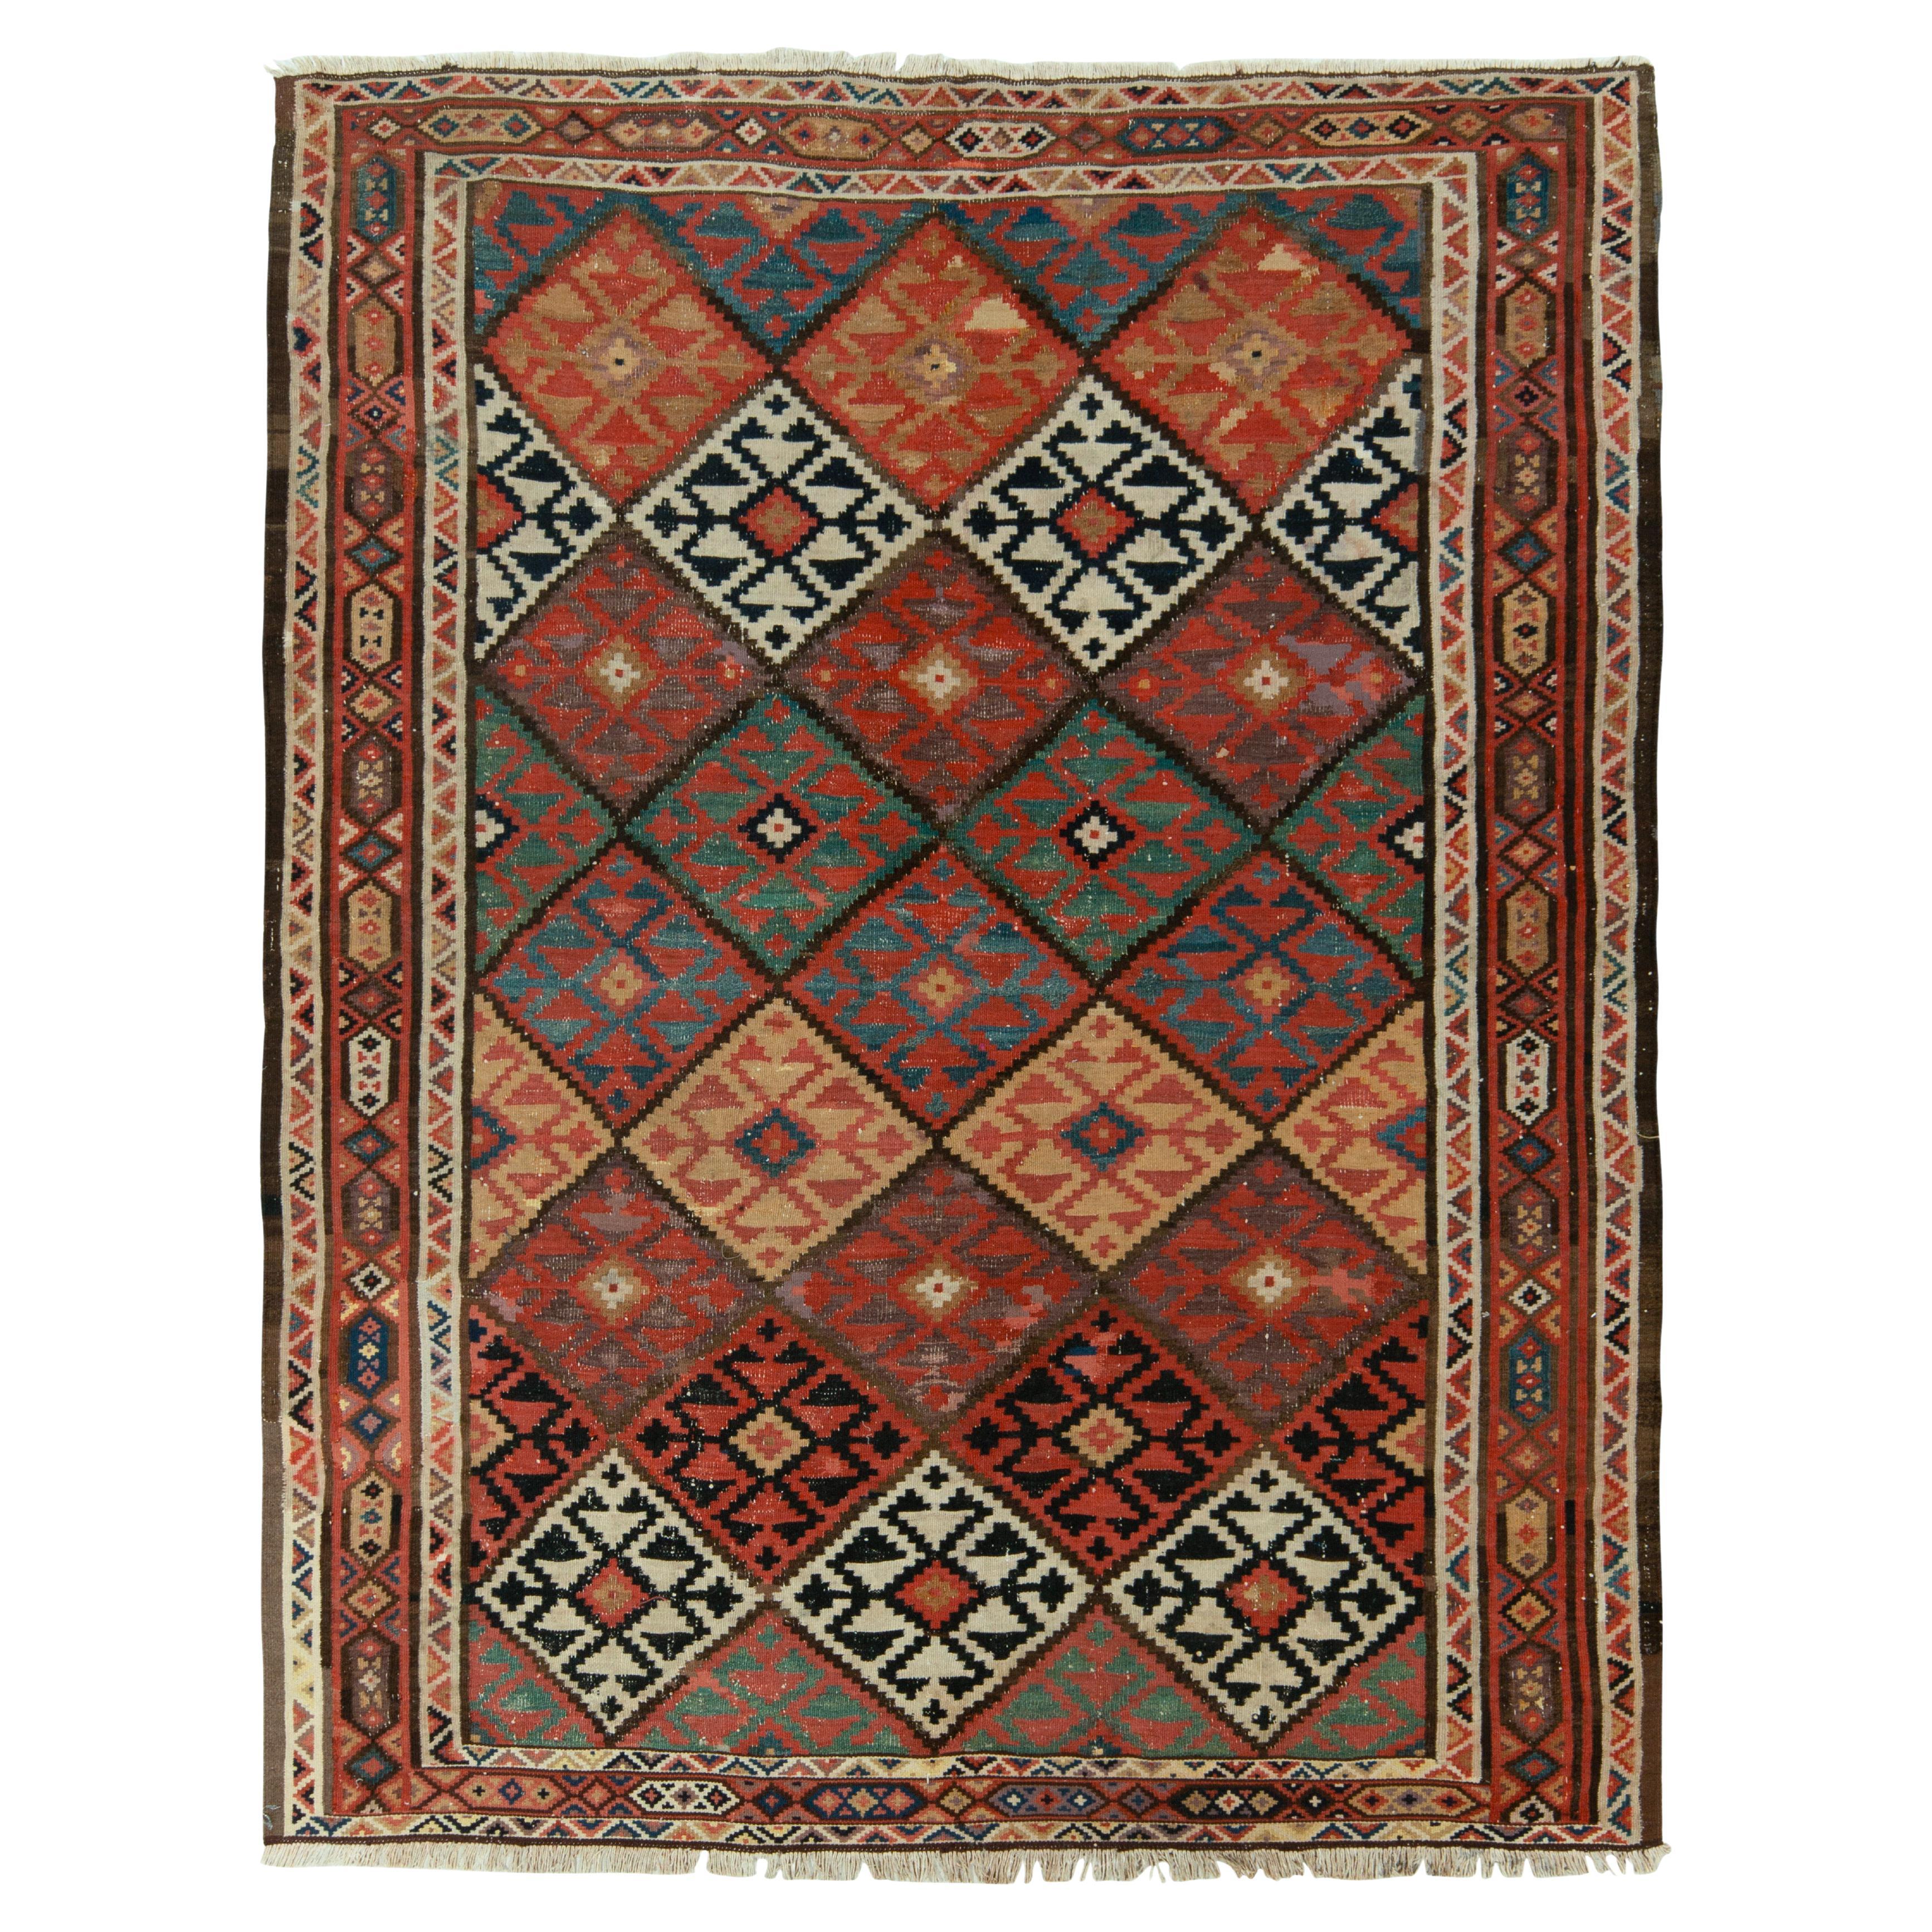 Handwoven Vintage Persian Kilim Rug in Red, Beige-Brown Geometric Pattern